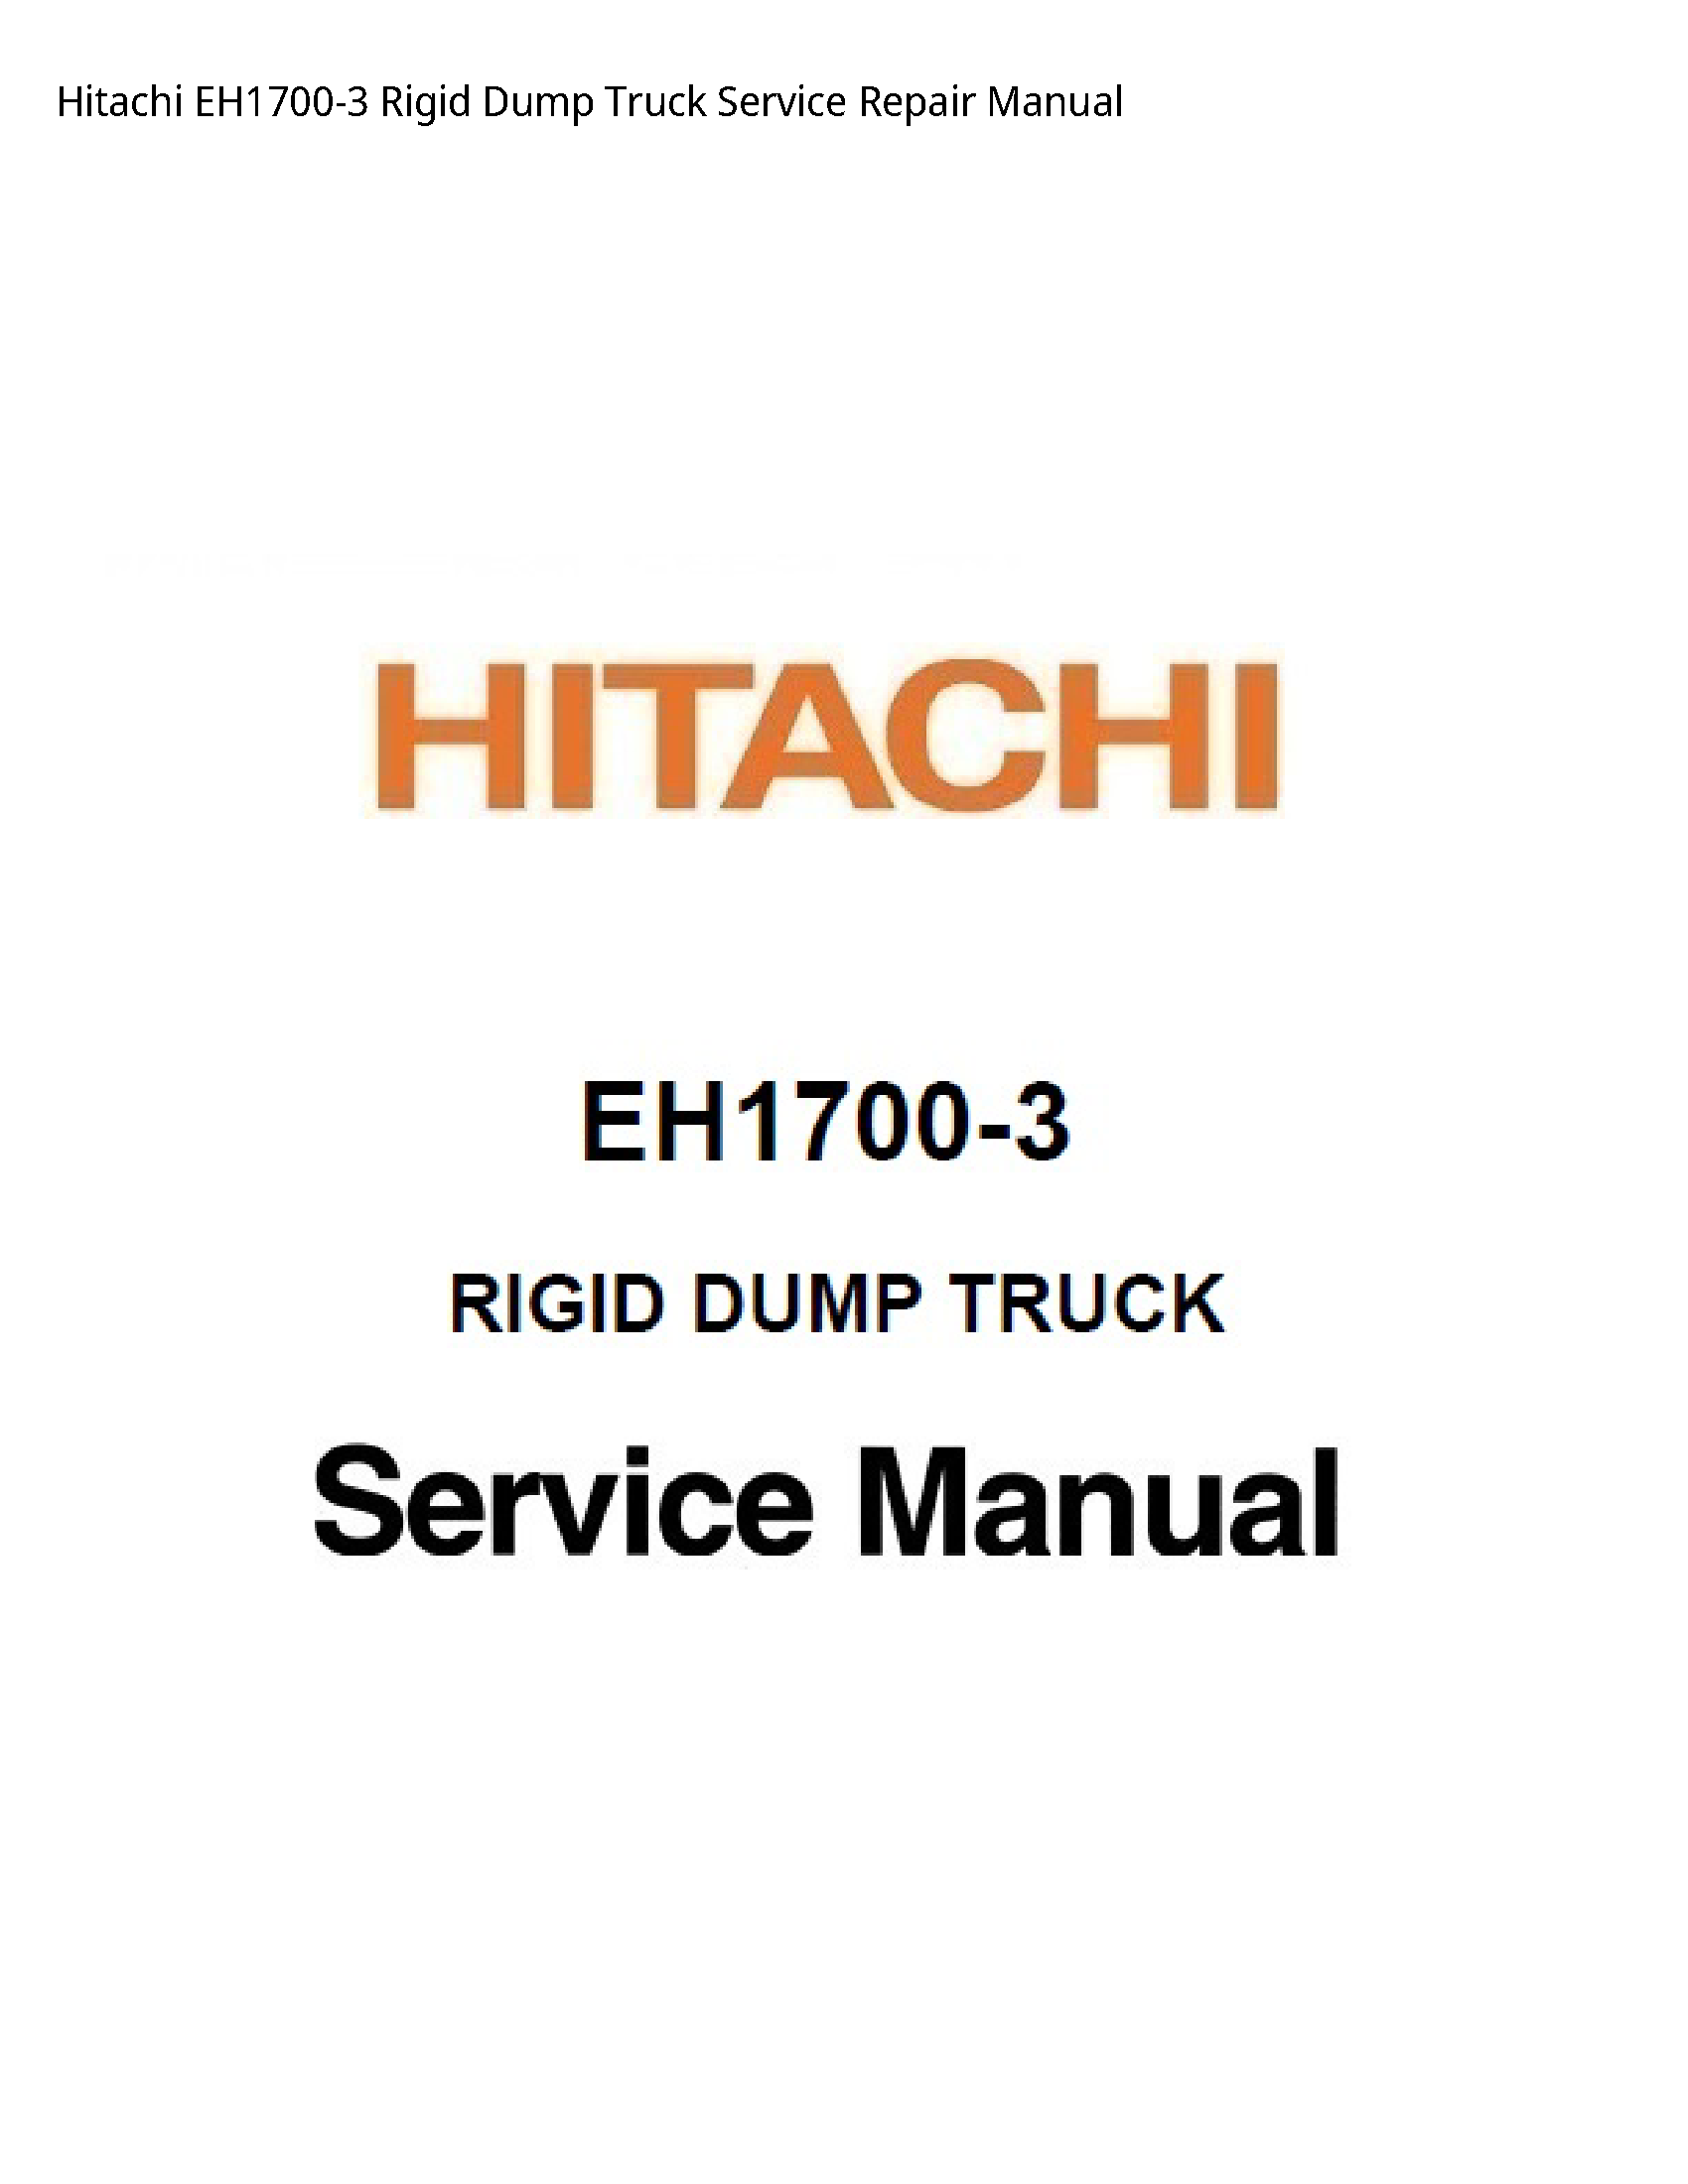 Hitachi EH1700-3 Rigid Dump Truck manual